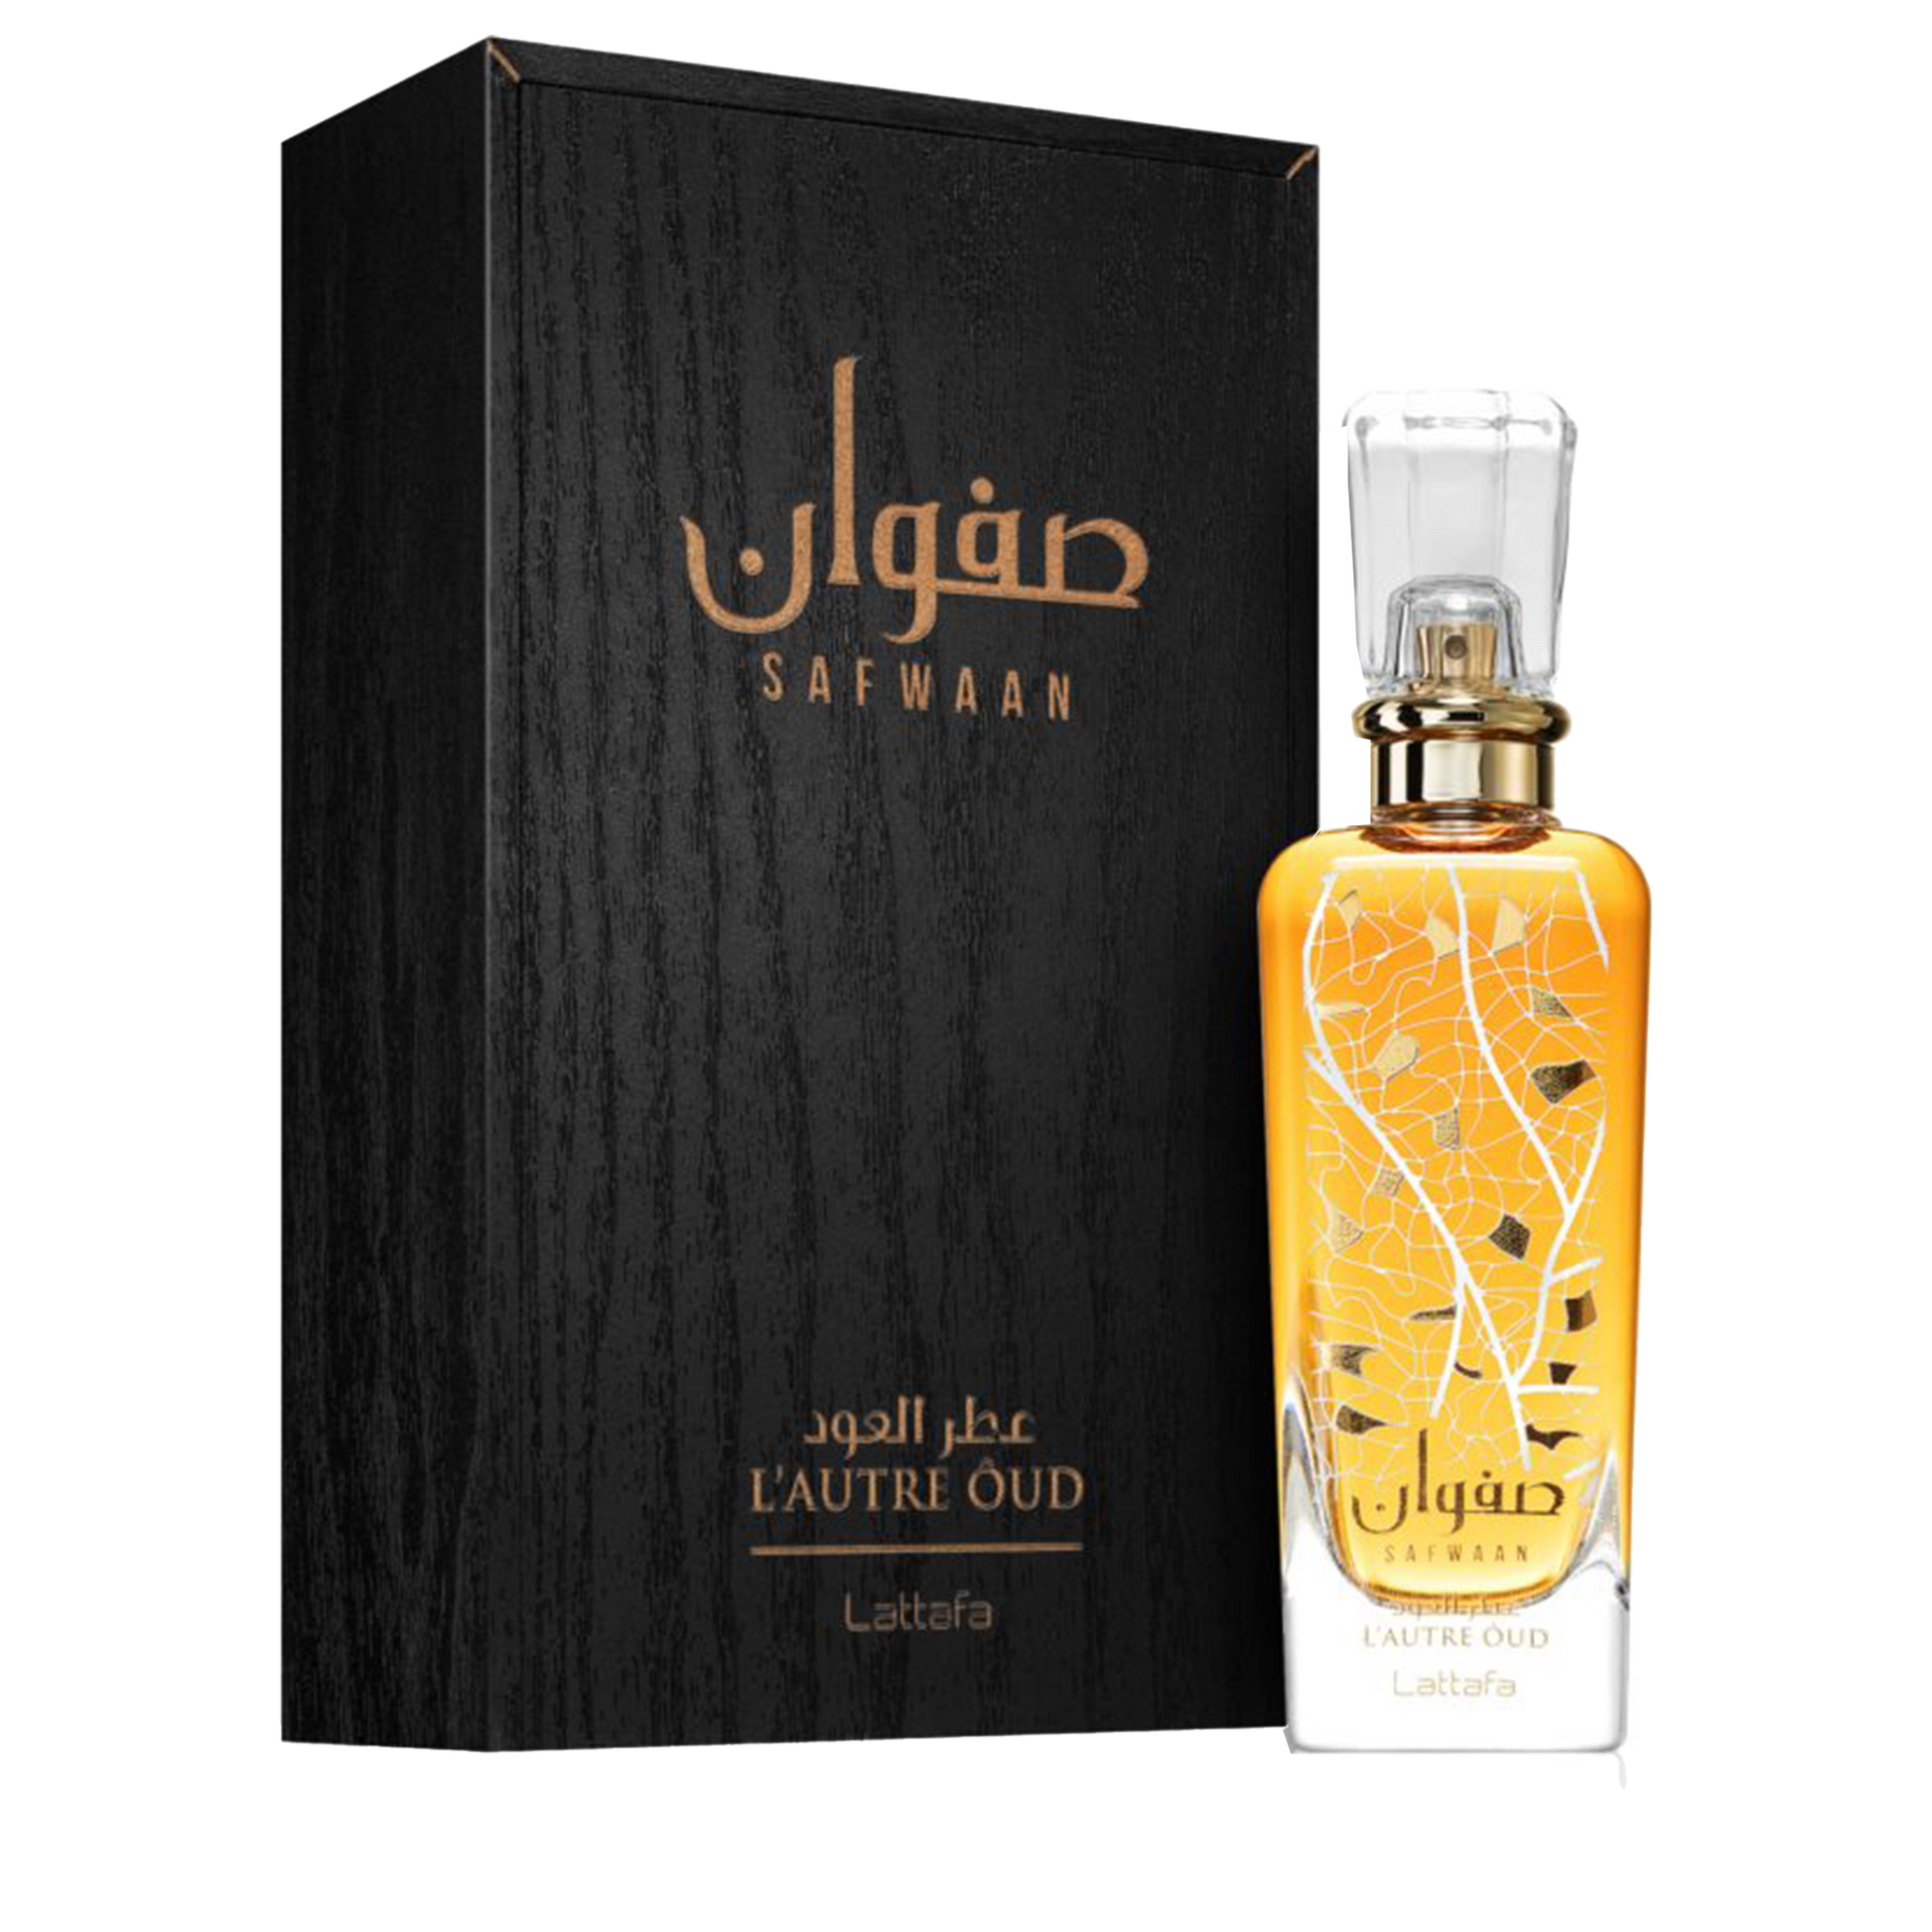 Buy Lattafa Perfume Safwaan Oud Unisex EDP - 100ml in Pakistan